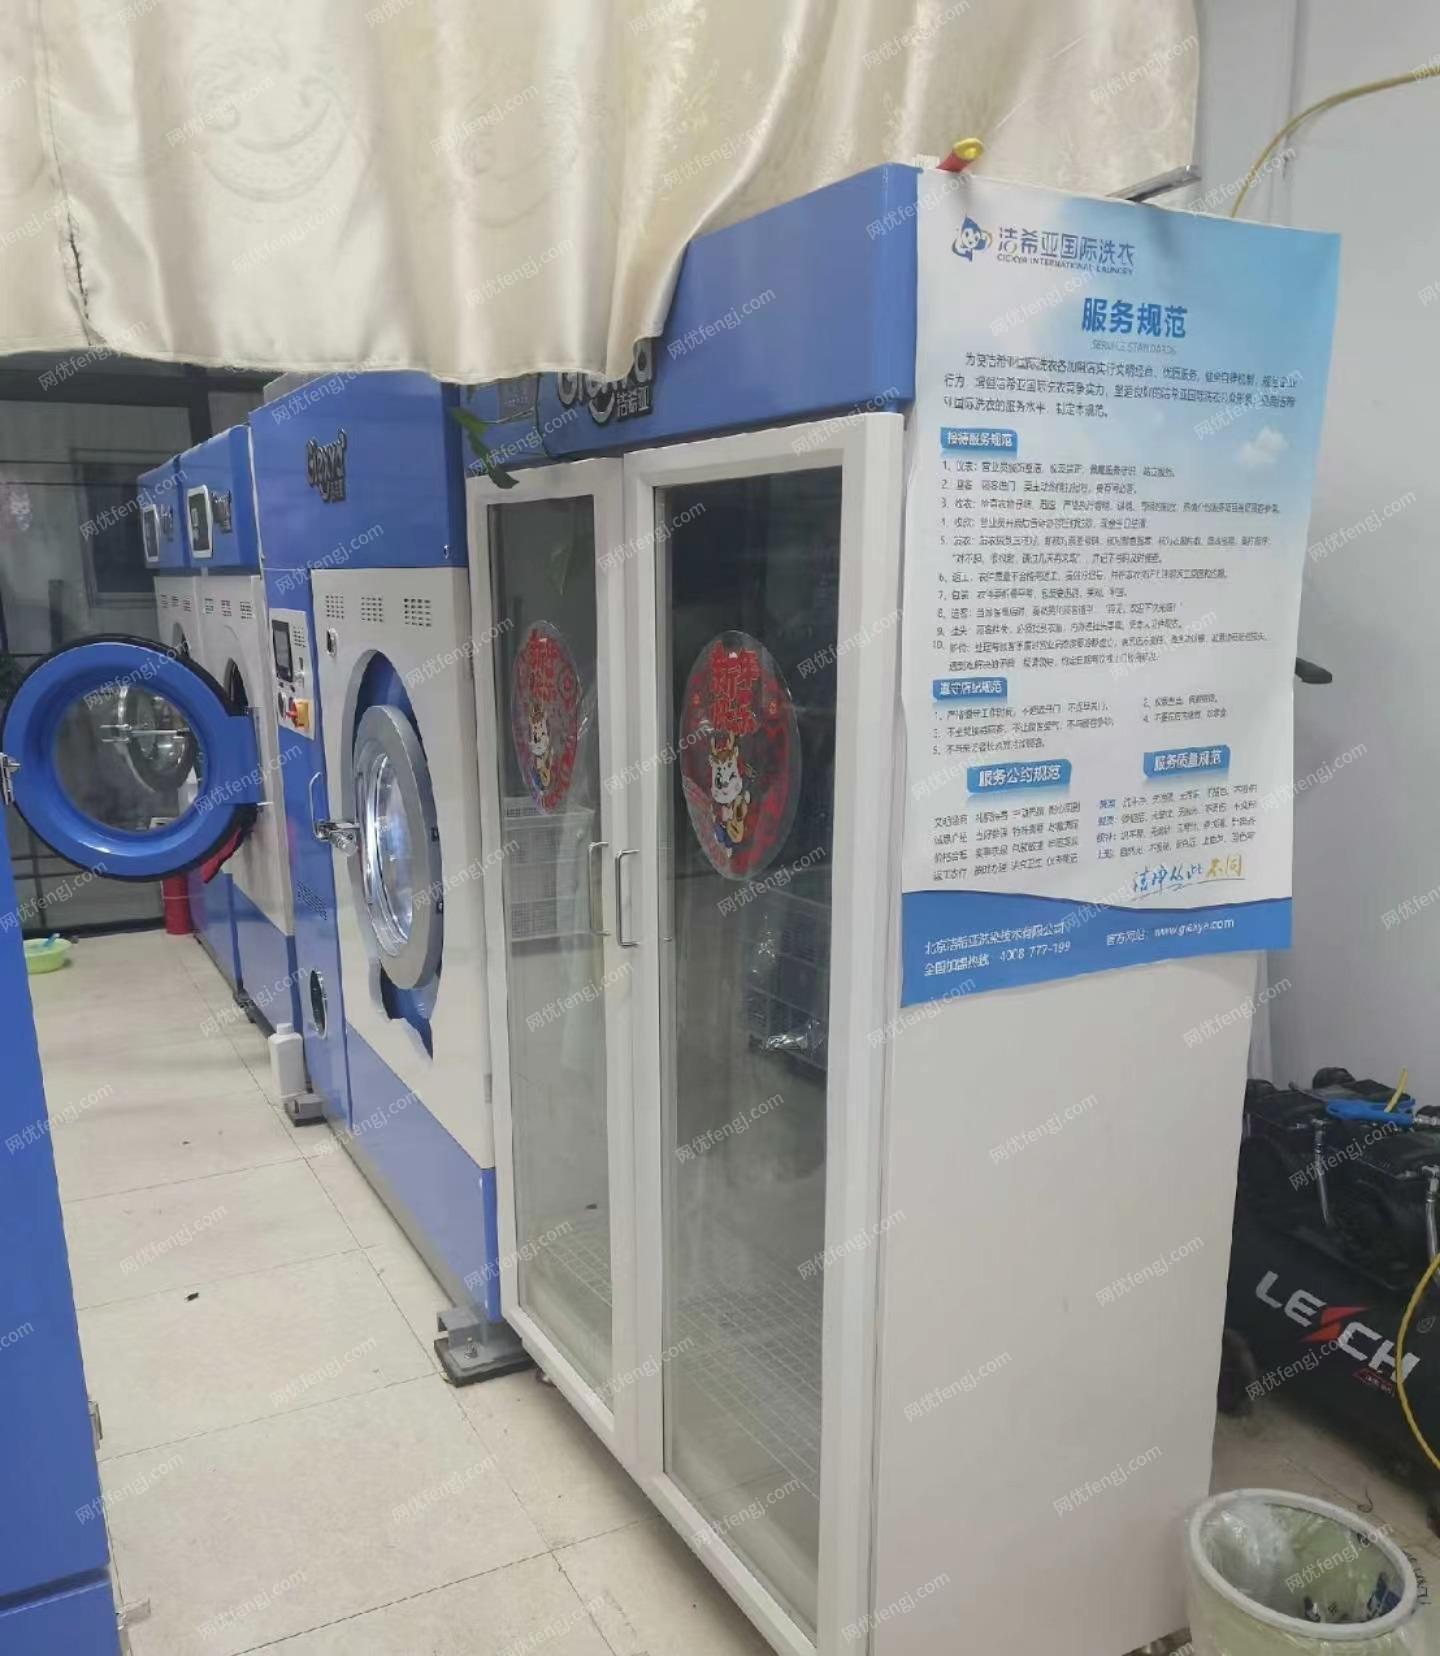 北京昌平干洗店撤了处理一整套干洗设备